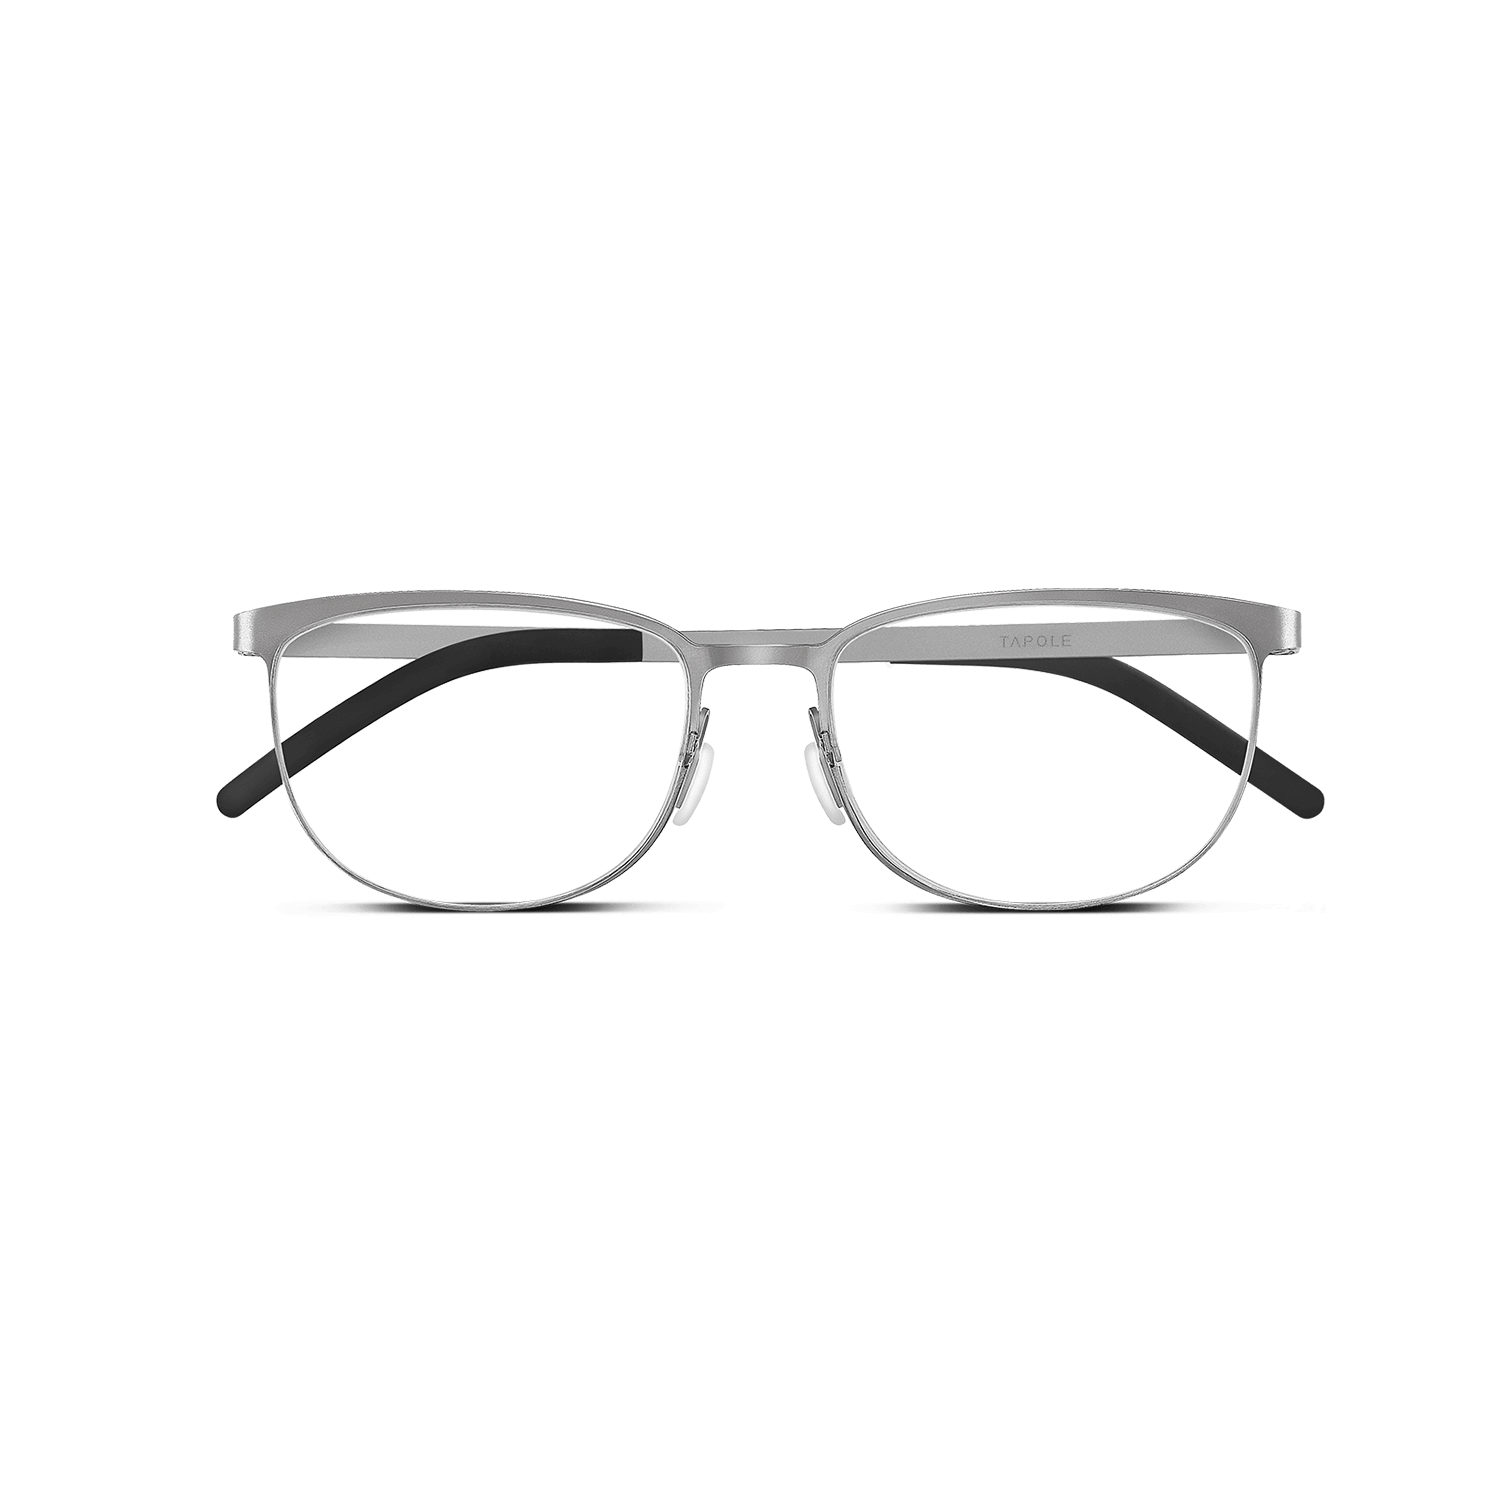 新款成品近视眼镜八角形眼镜男框个性多边形防蓝光眼镜女厂家批发-阿里巴巴